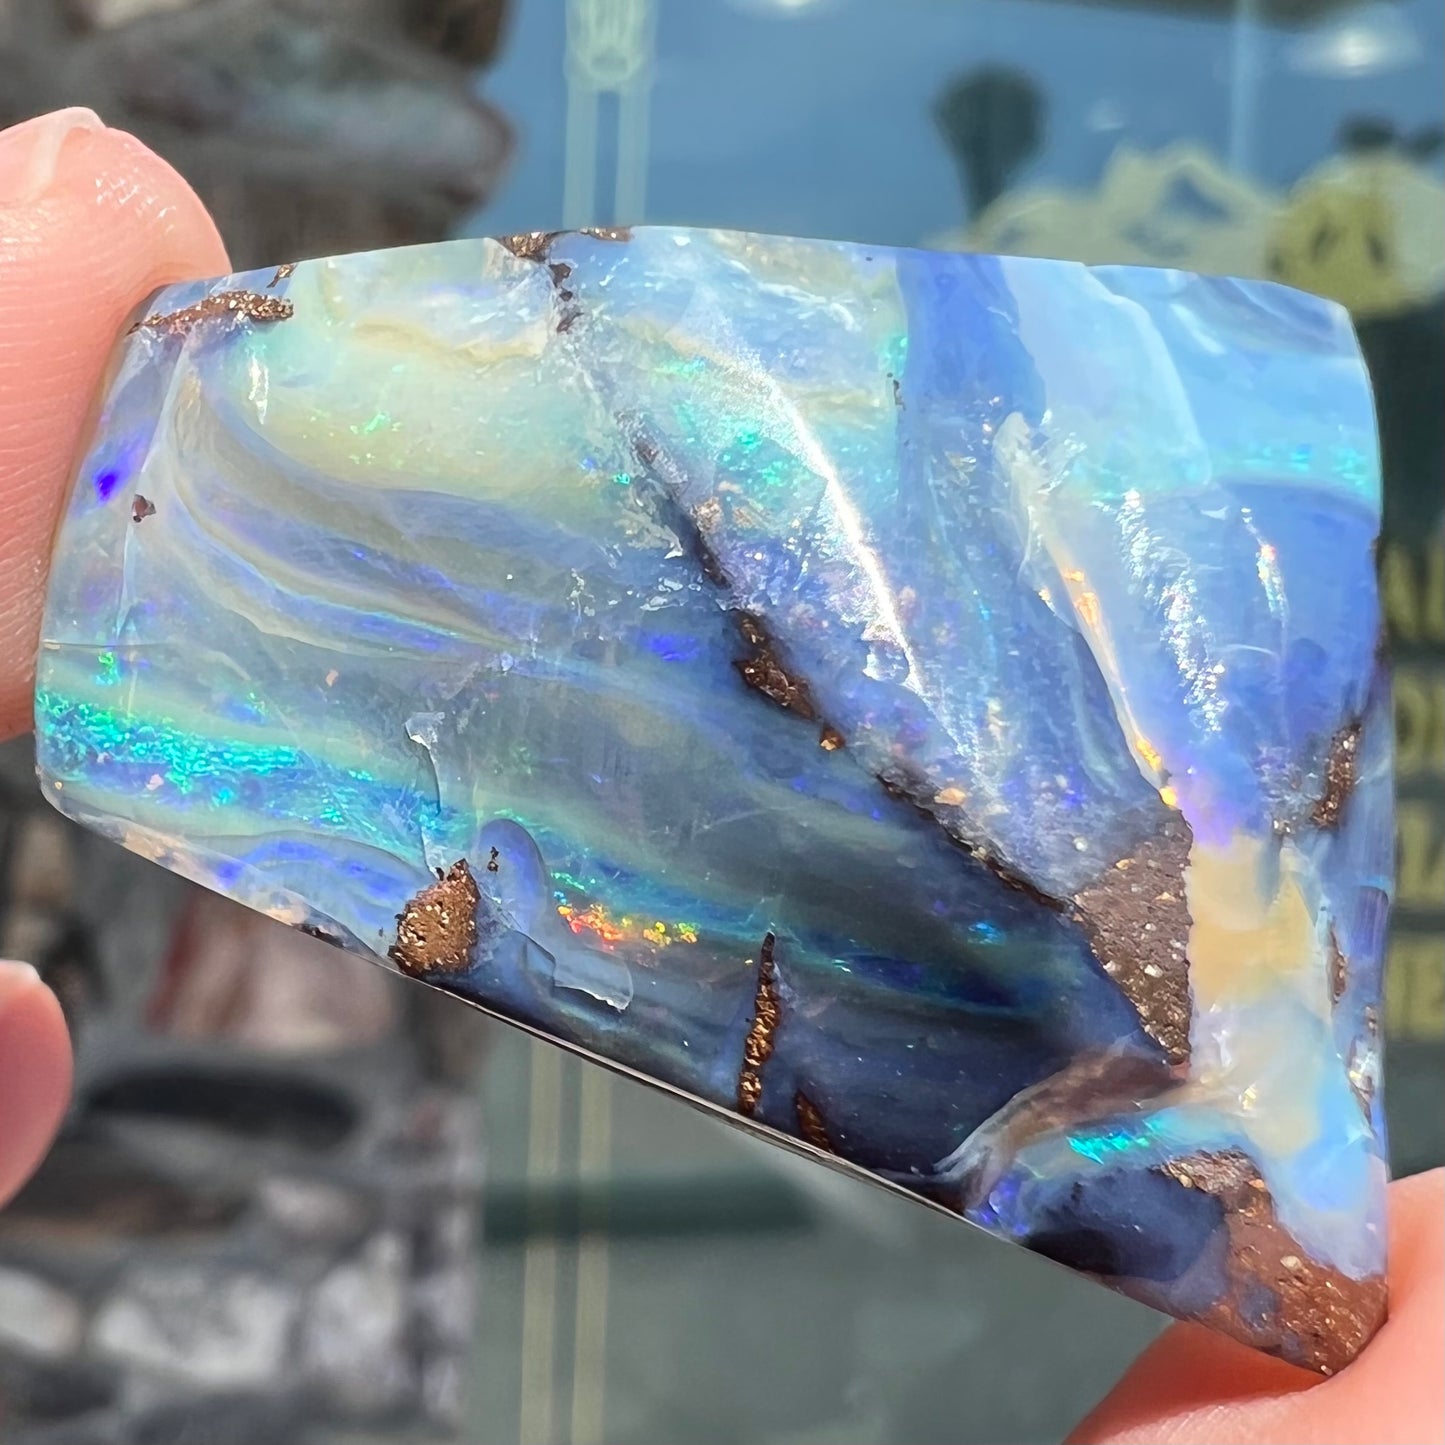 A loose, polished blue boulder opal specimen from Queensland, Australia.